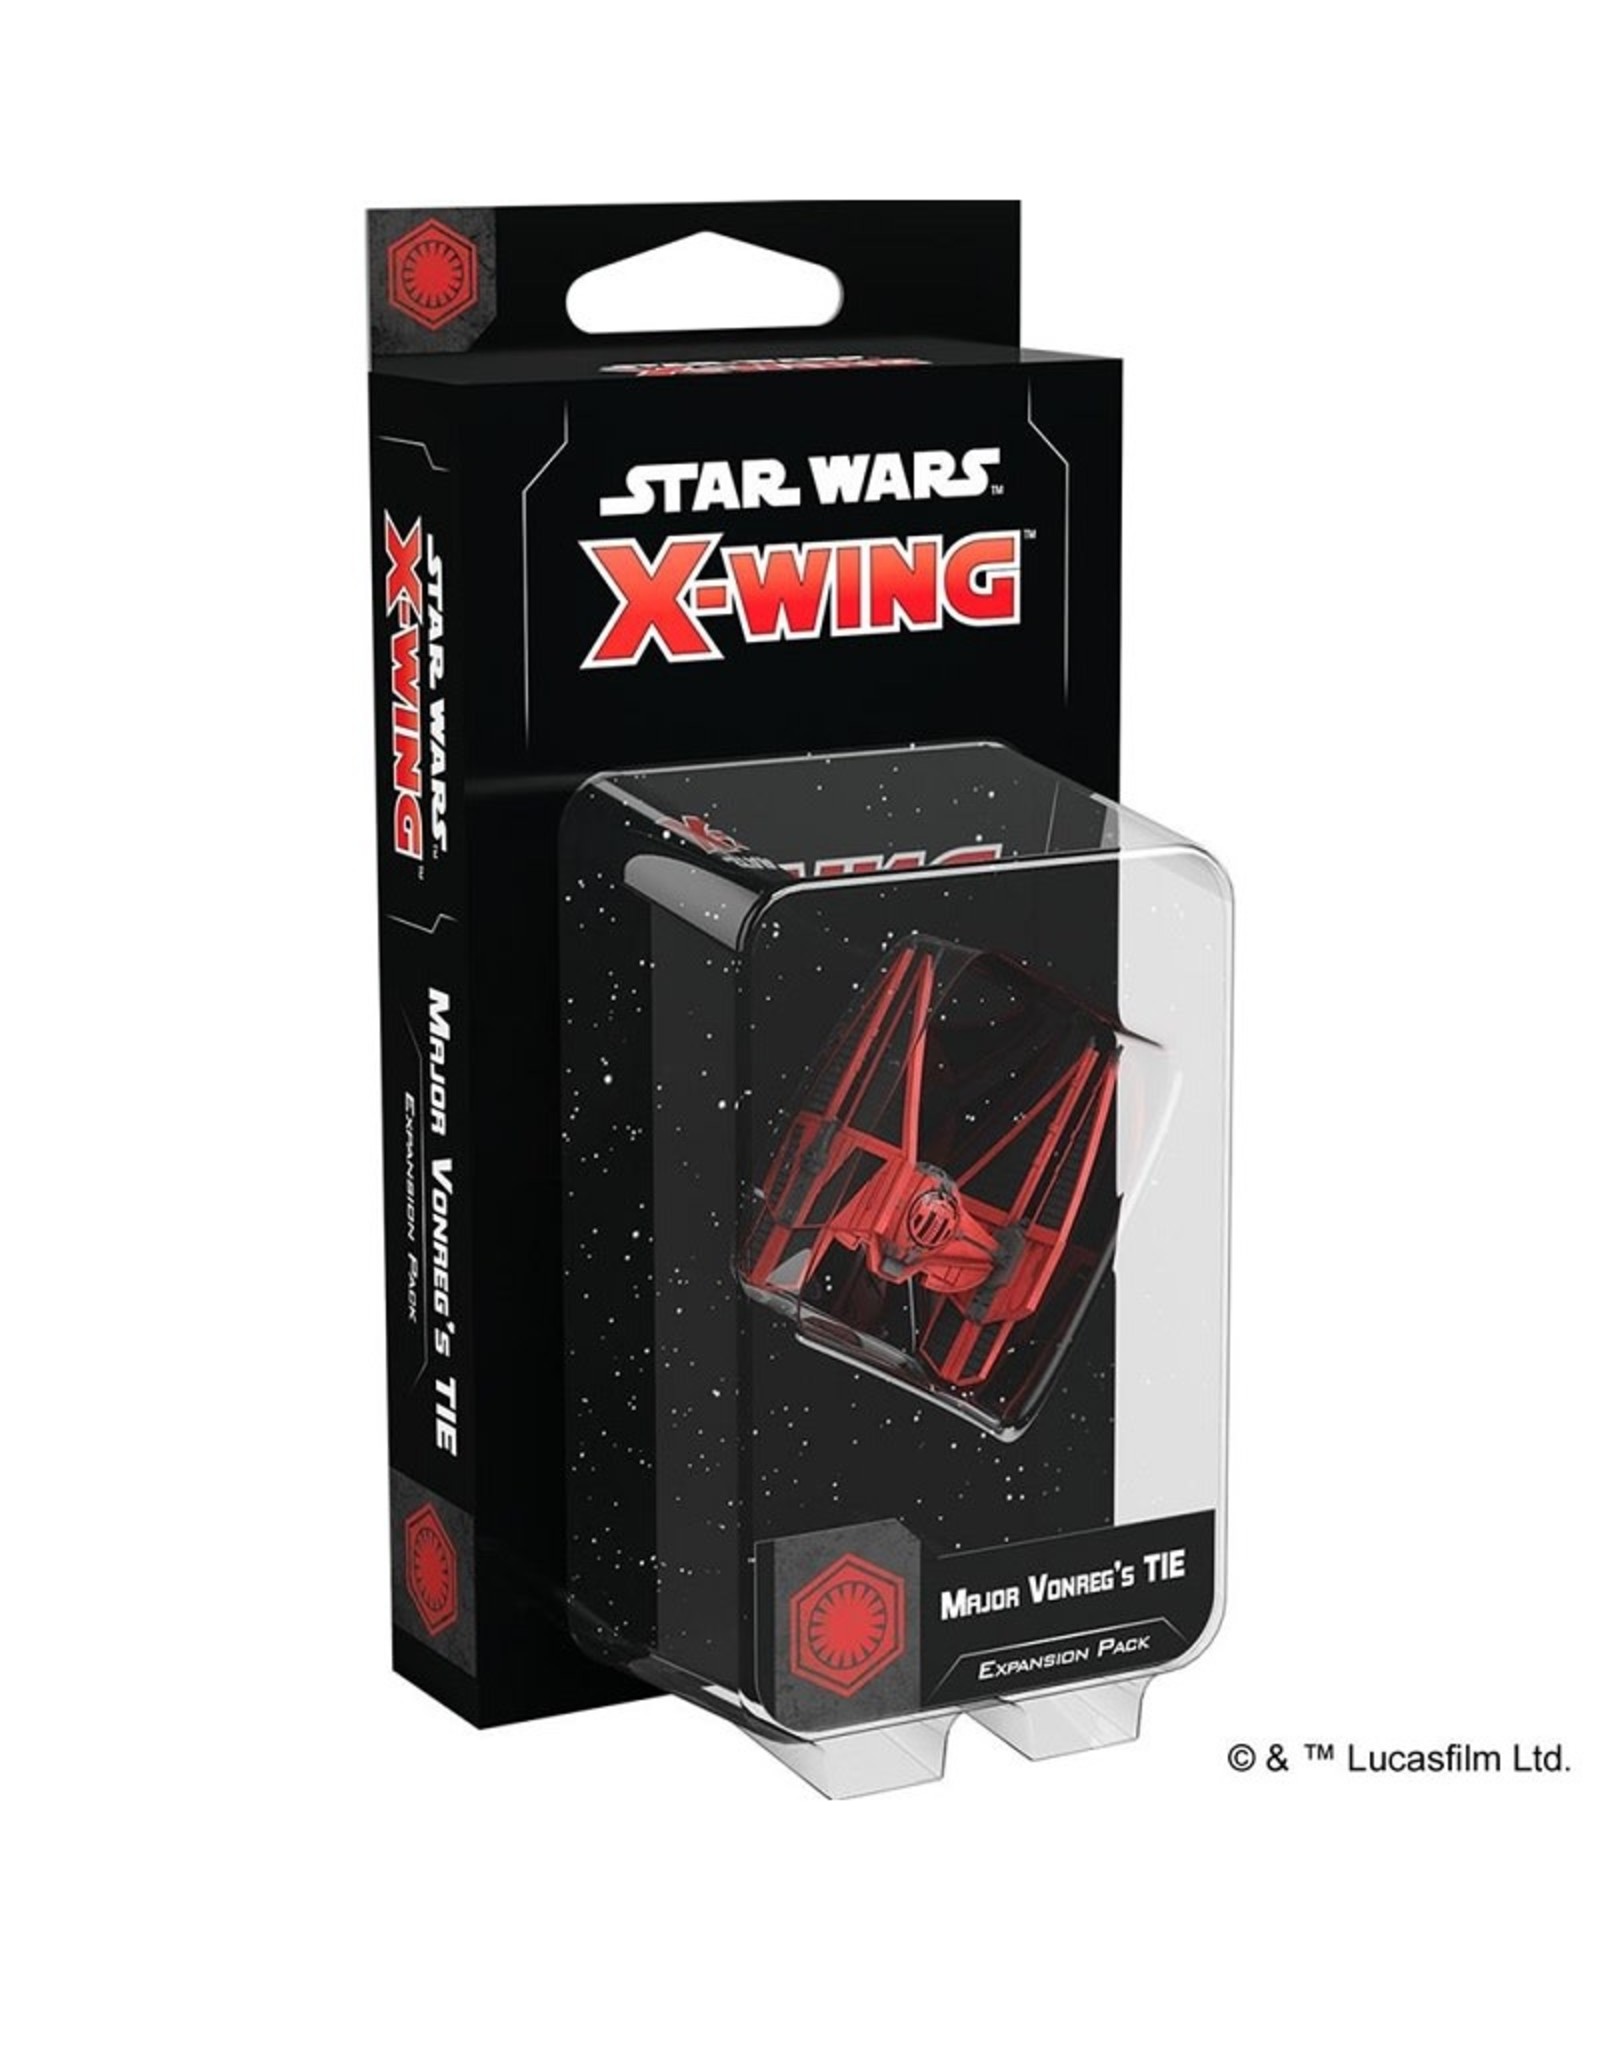 Atomic Mass Games Star Wars X-Wing: Major Vonreg's TIE - 2nd Edition